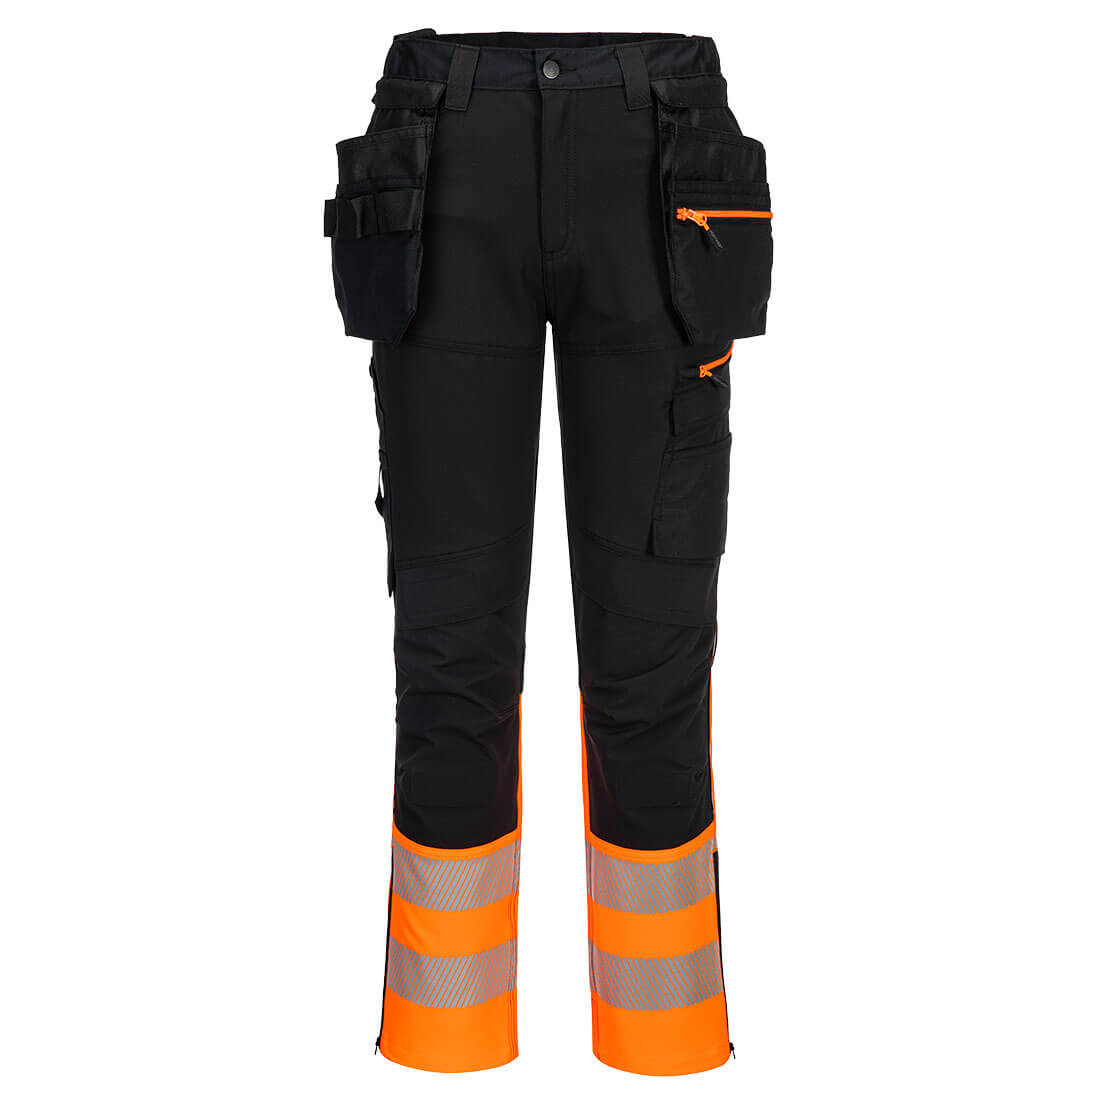 Pantaloni cu buzunare Holster Hi-Vis Clasa 1 DX4 - Imbracaminte de protectie